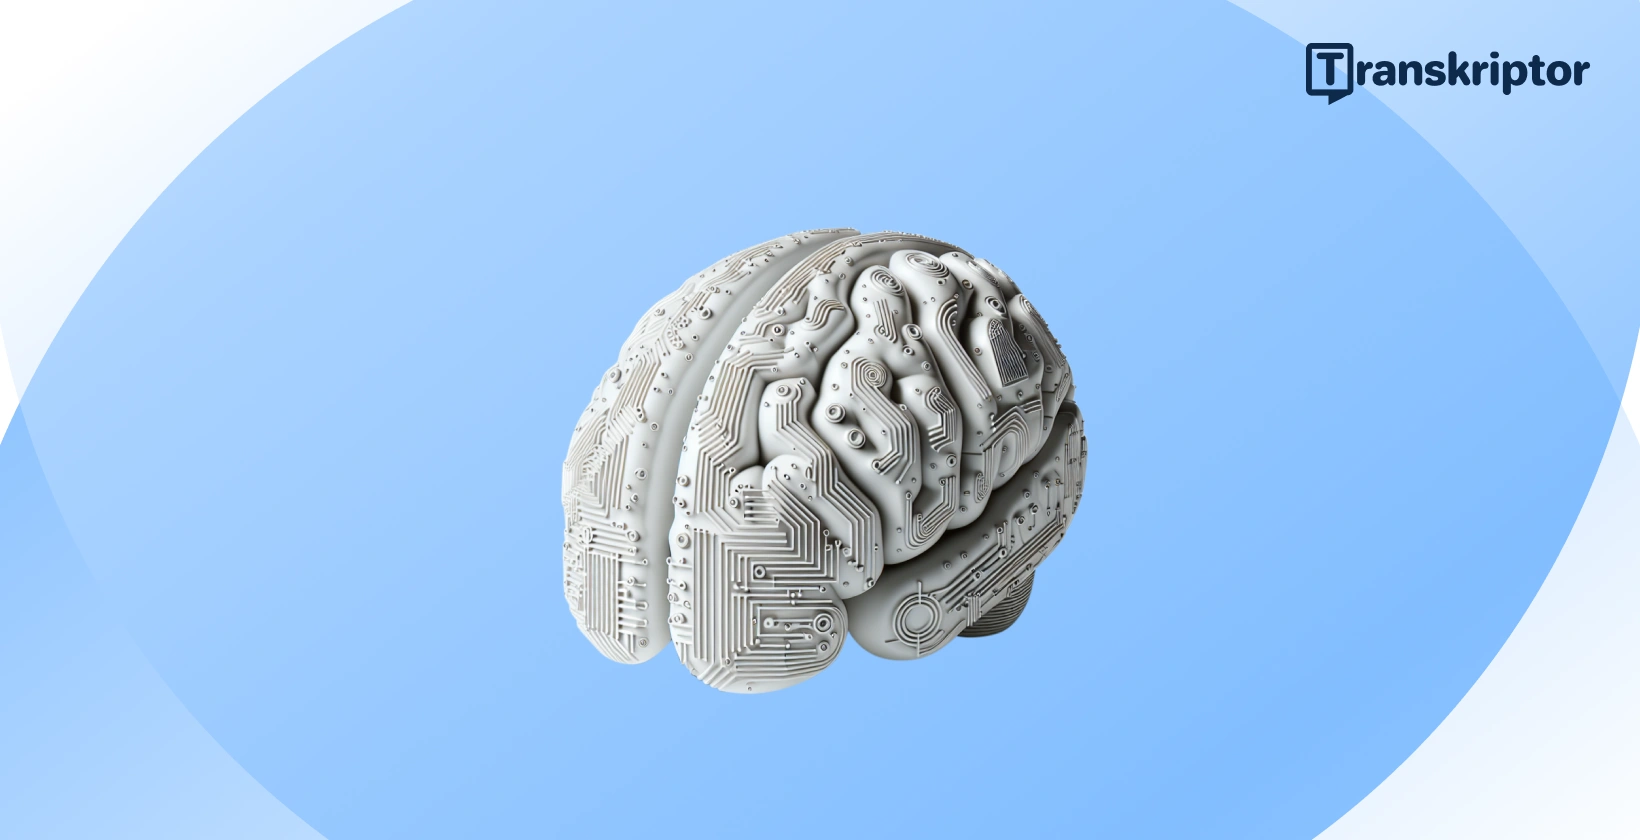 En AI-hjerneillustrasjon som gjenspeiler integreringen av kunstig intelligens i moderne regnskapspraksis.